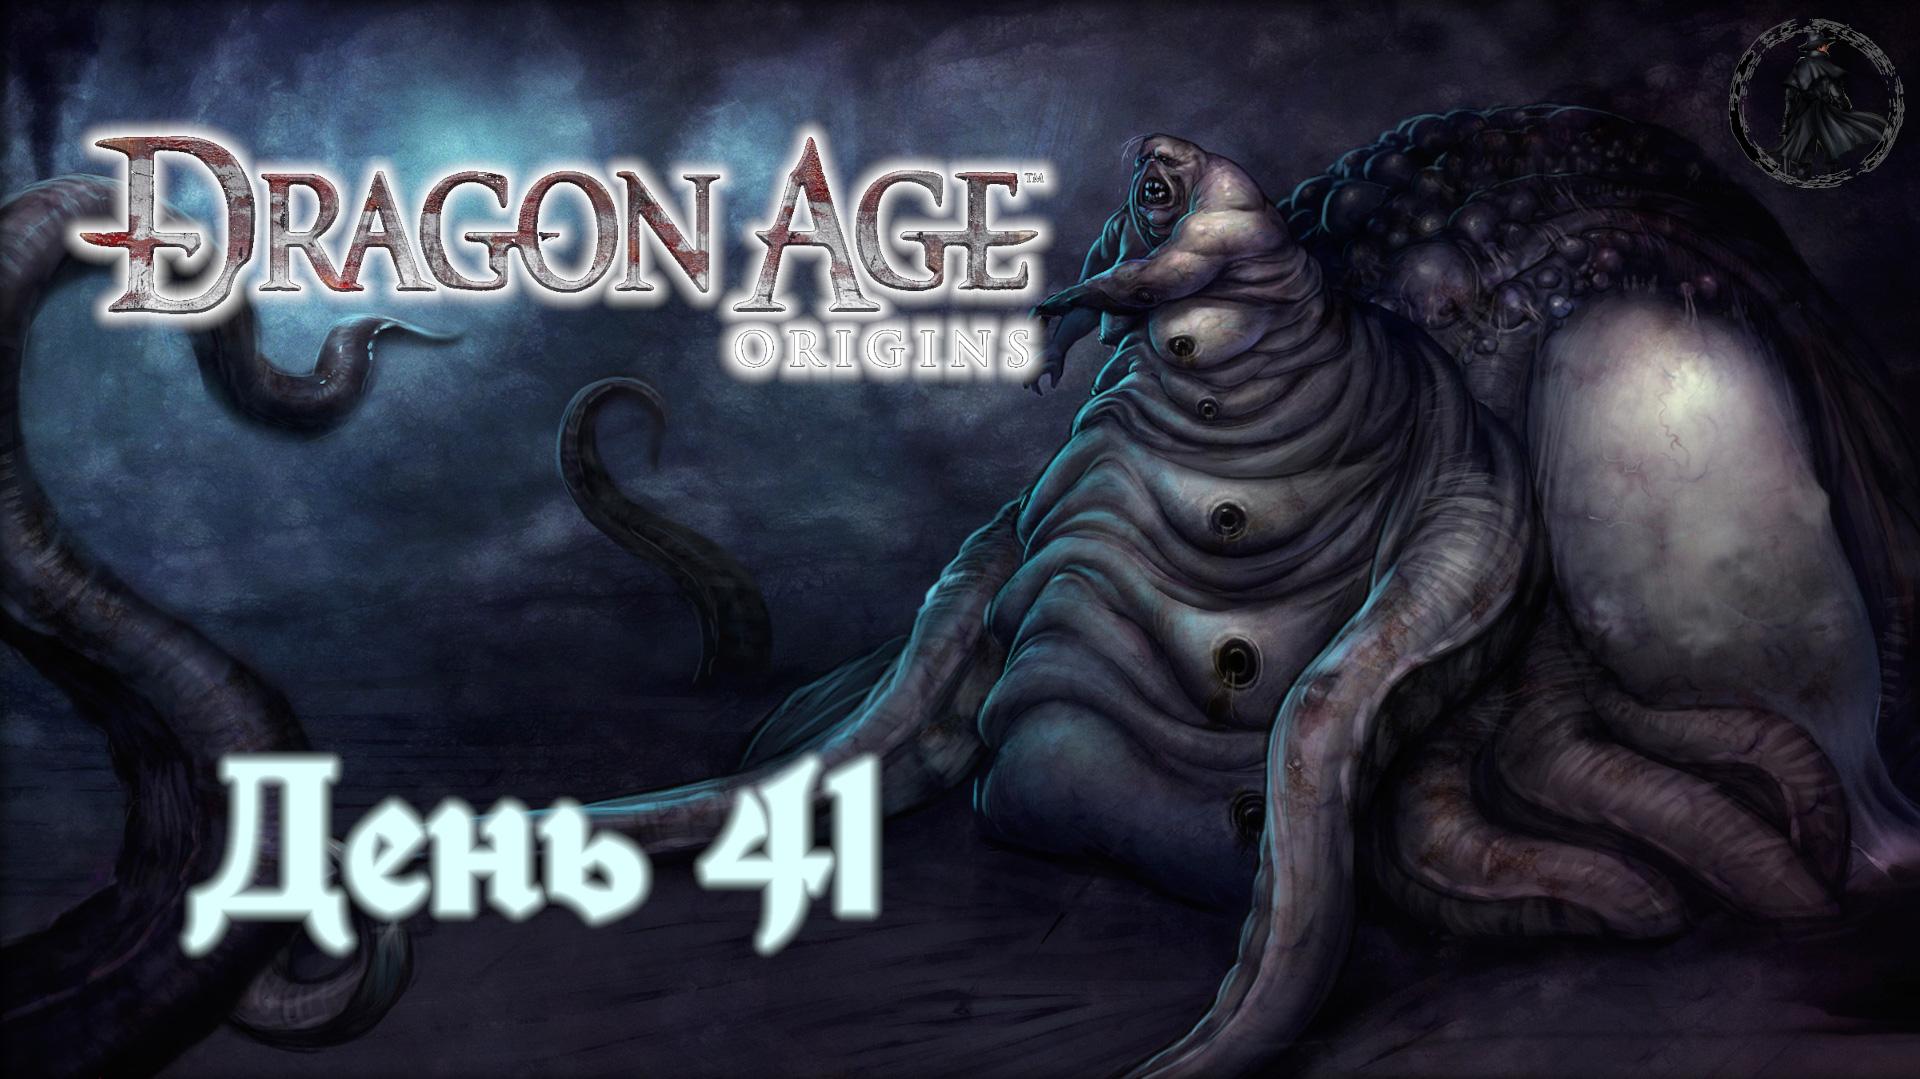 Dragon Age: Origins. Прохождение. Науки призыва (часть 41)